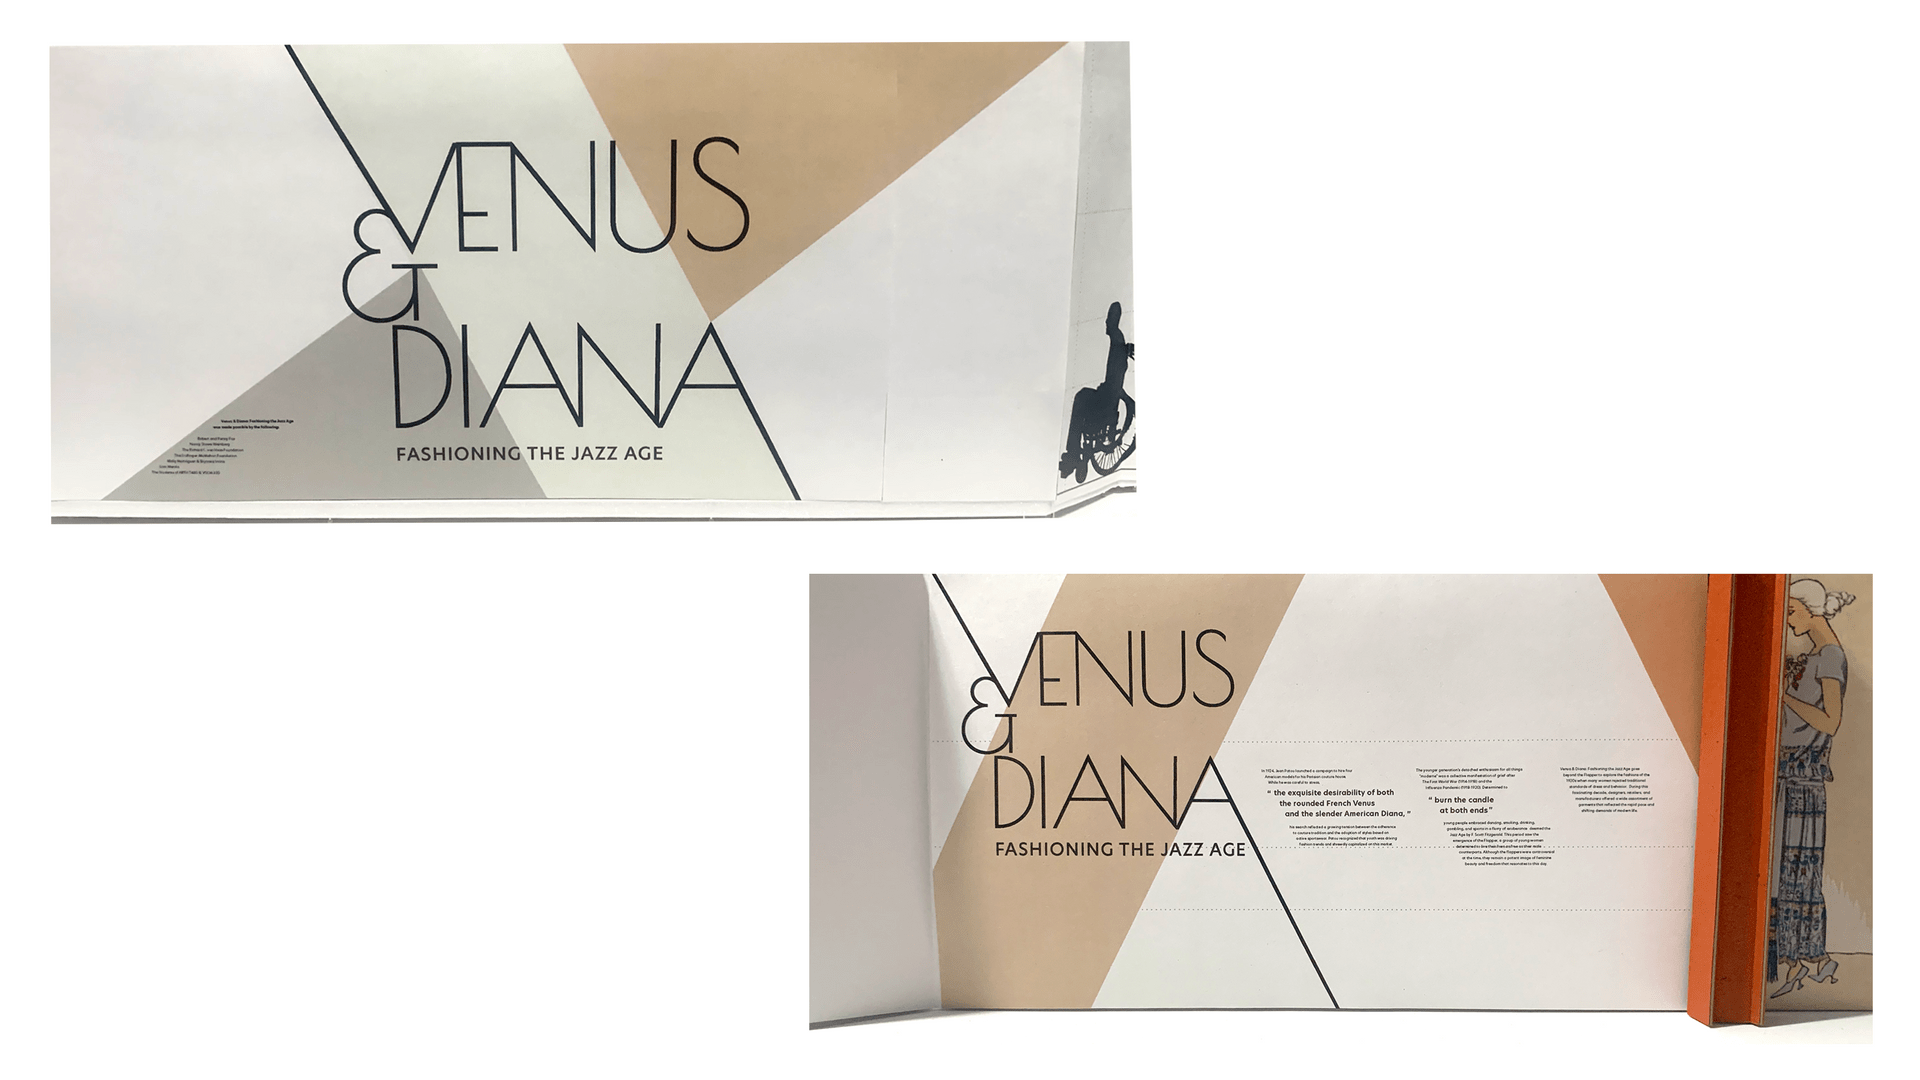 Venus & Diana